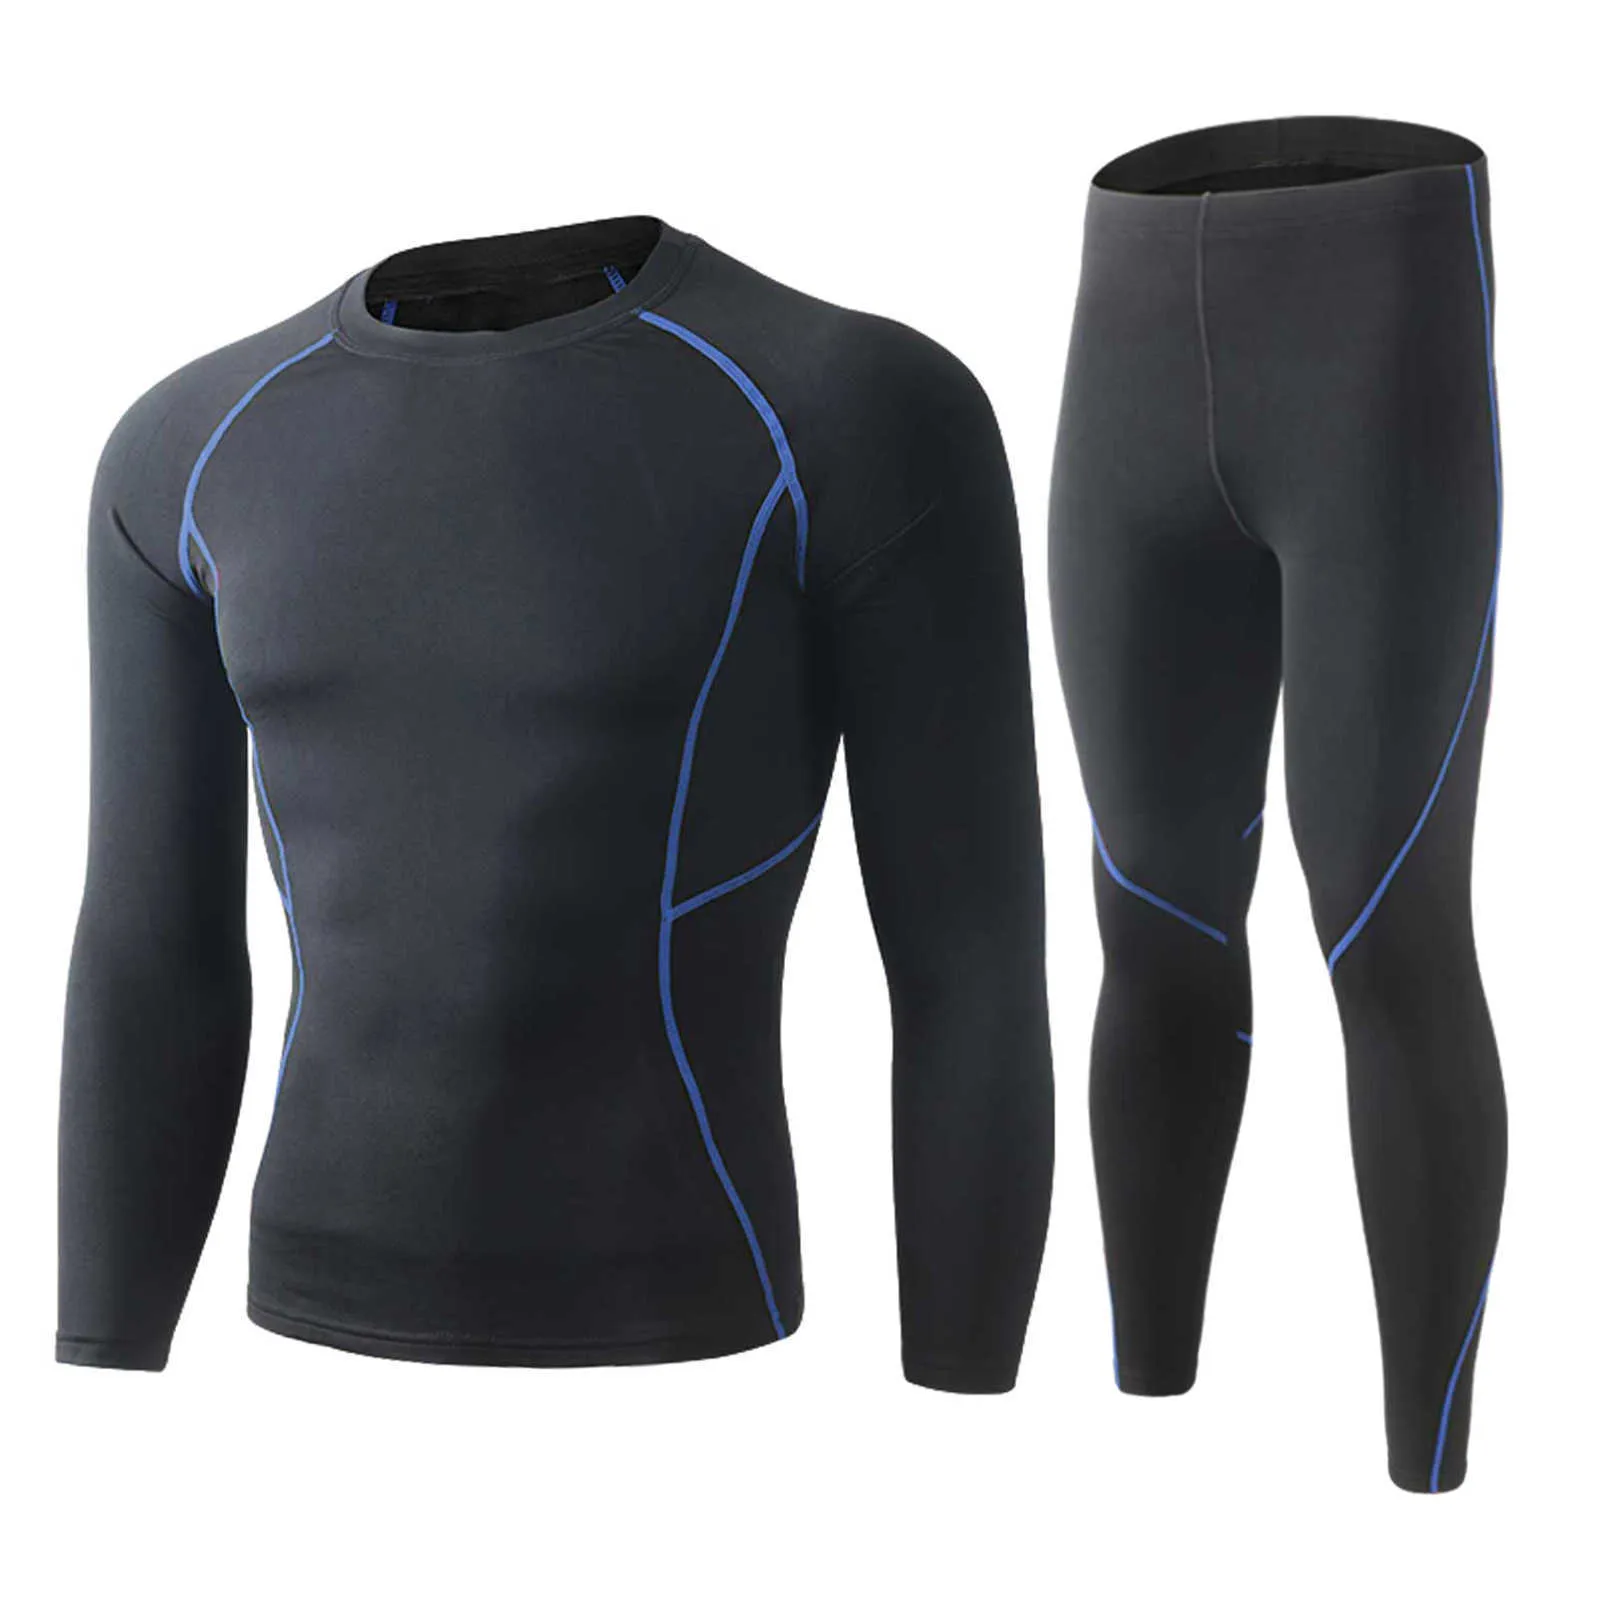 Winter Männer Thermo-unterwäsche Set Sweat Shirt Lange Unterhosen Bodycon Fit Atmungsaktive Lauf Skifahren Fitness Ausrüstung X0610